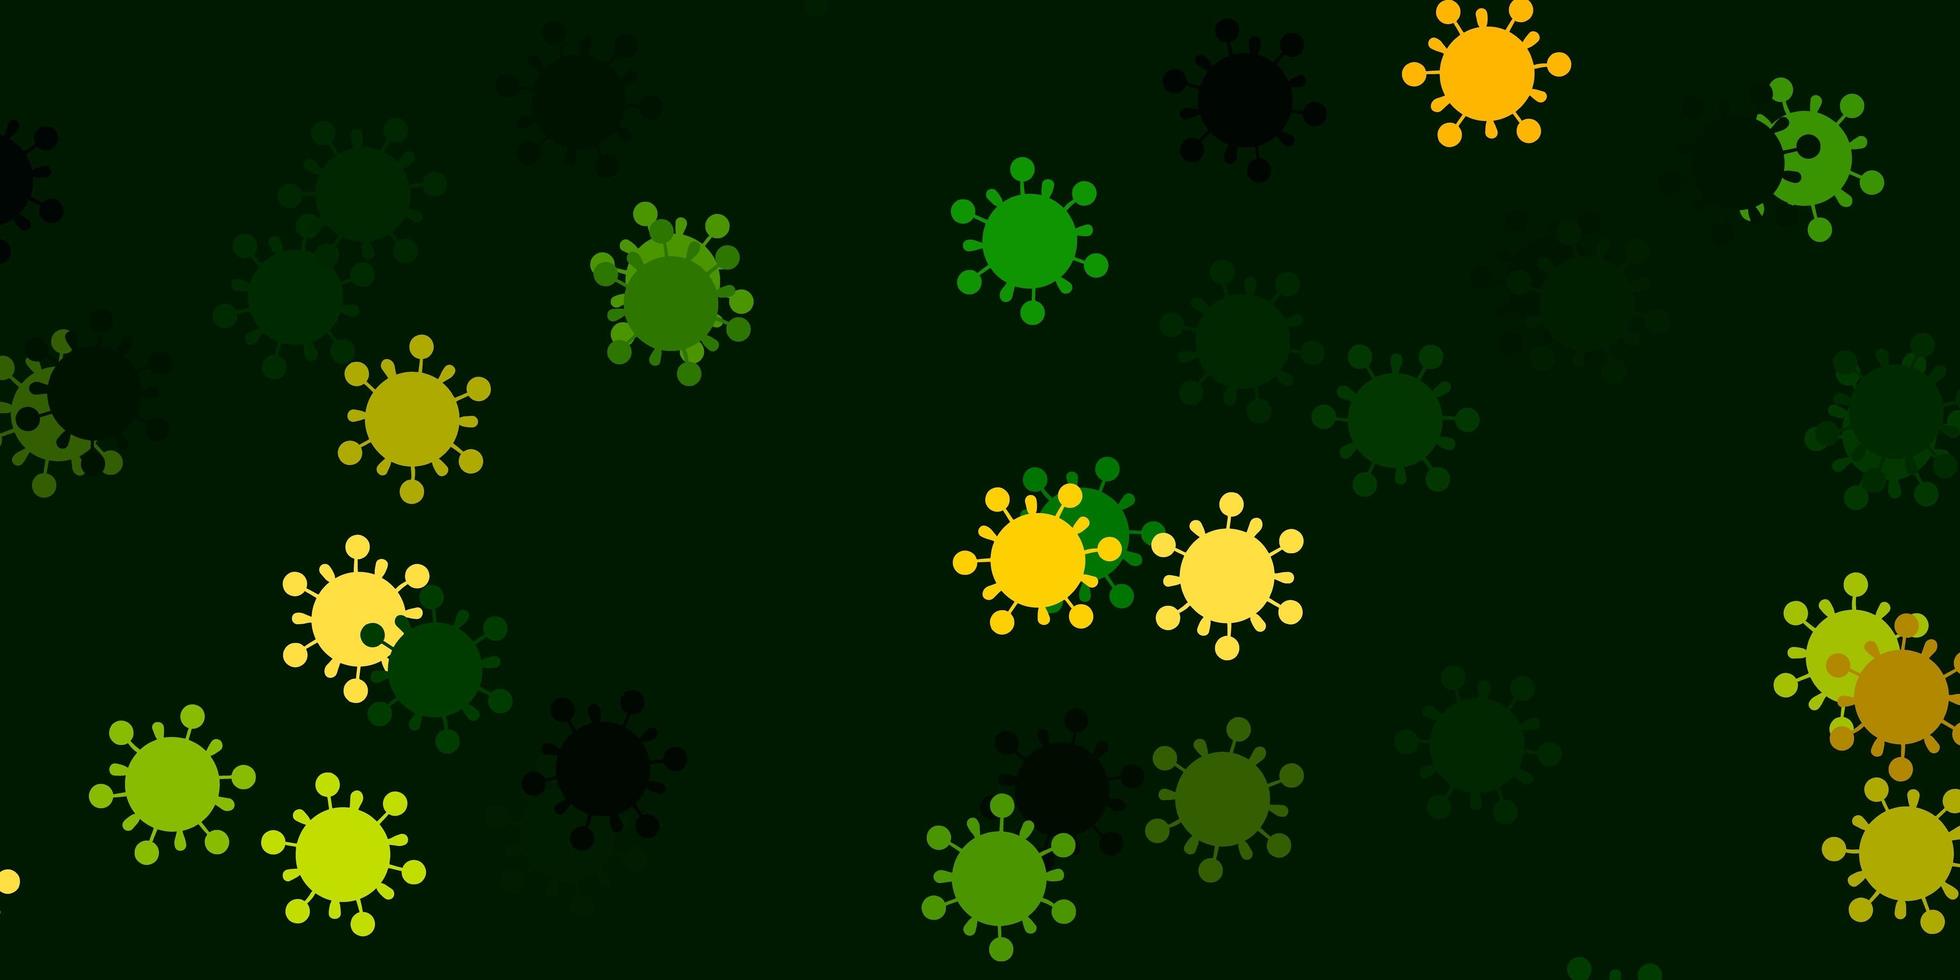 patrón de vector verde claro, rojo con elementos de coronavirus.